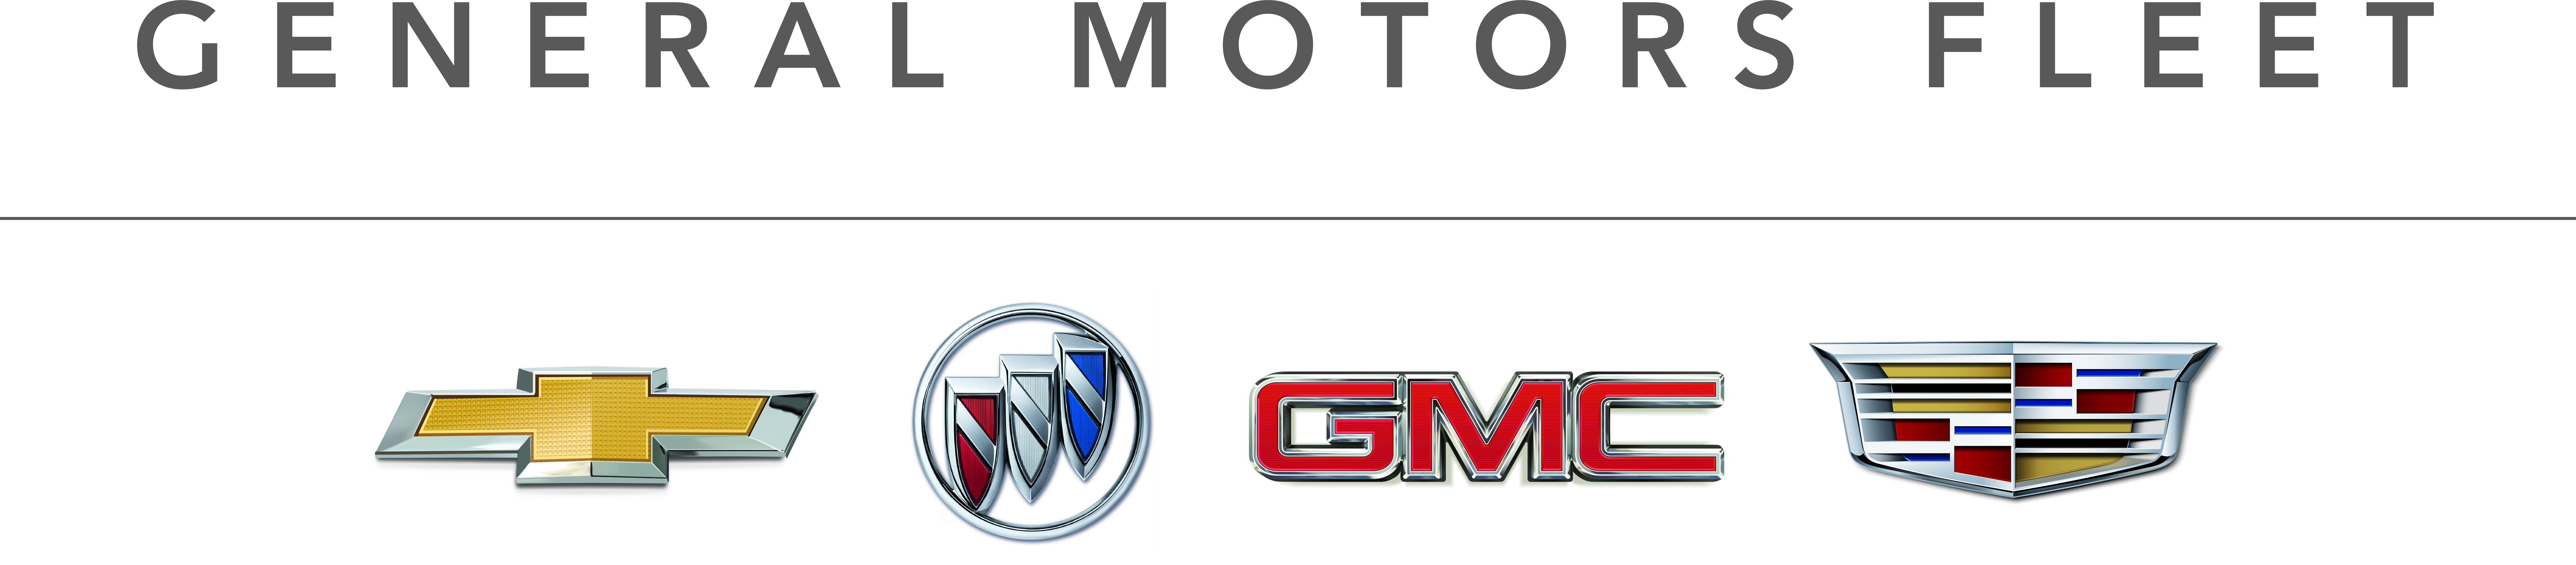 General Motors Fleet